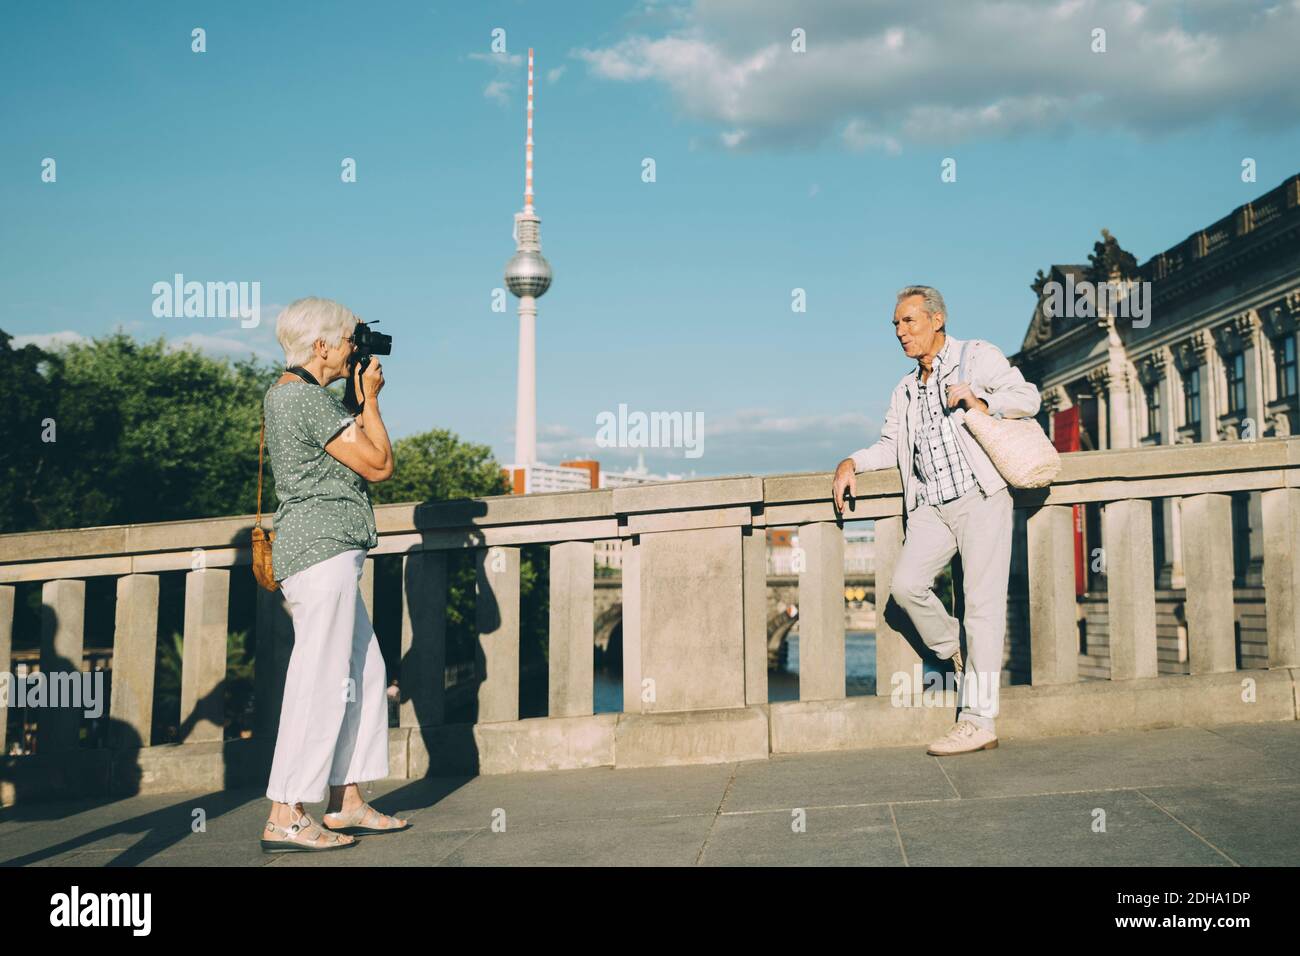 Lunghezza completa di donna che prende la fotografia dell'uomo anziano mentre in piedi sul ponte contro la torre della città Foto Stock